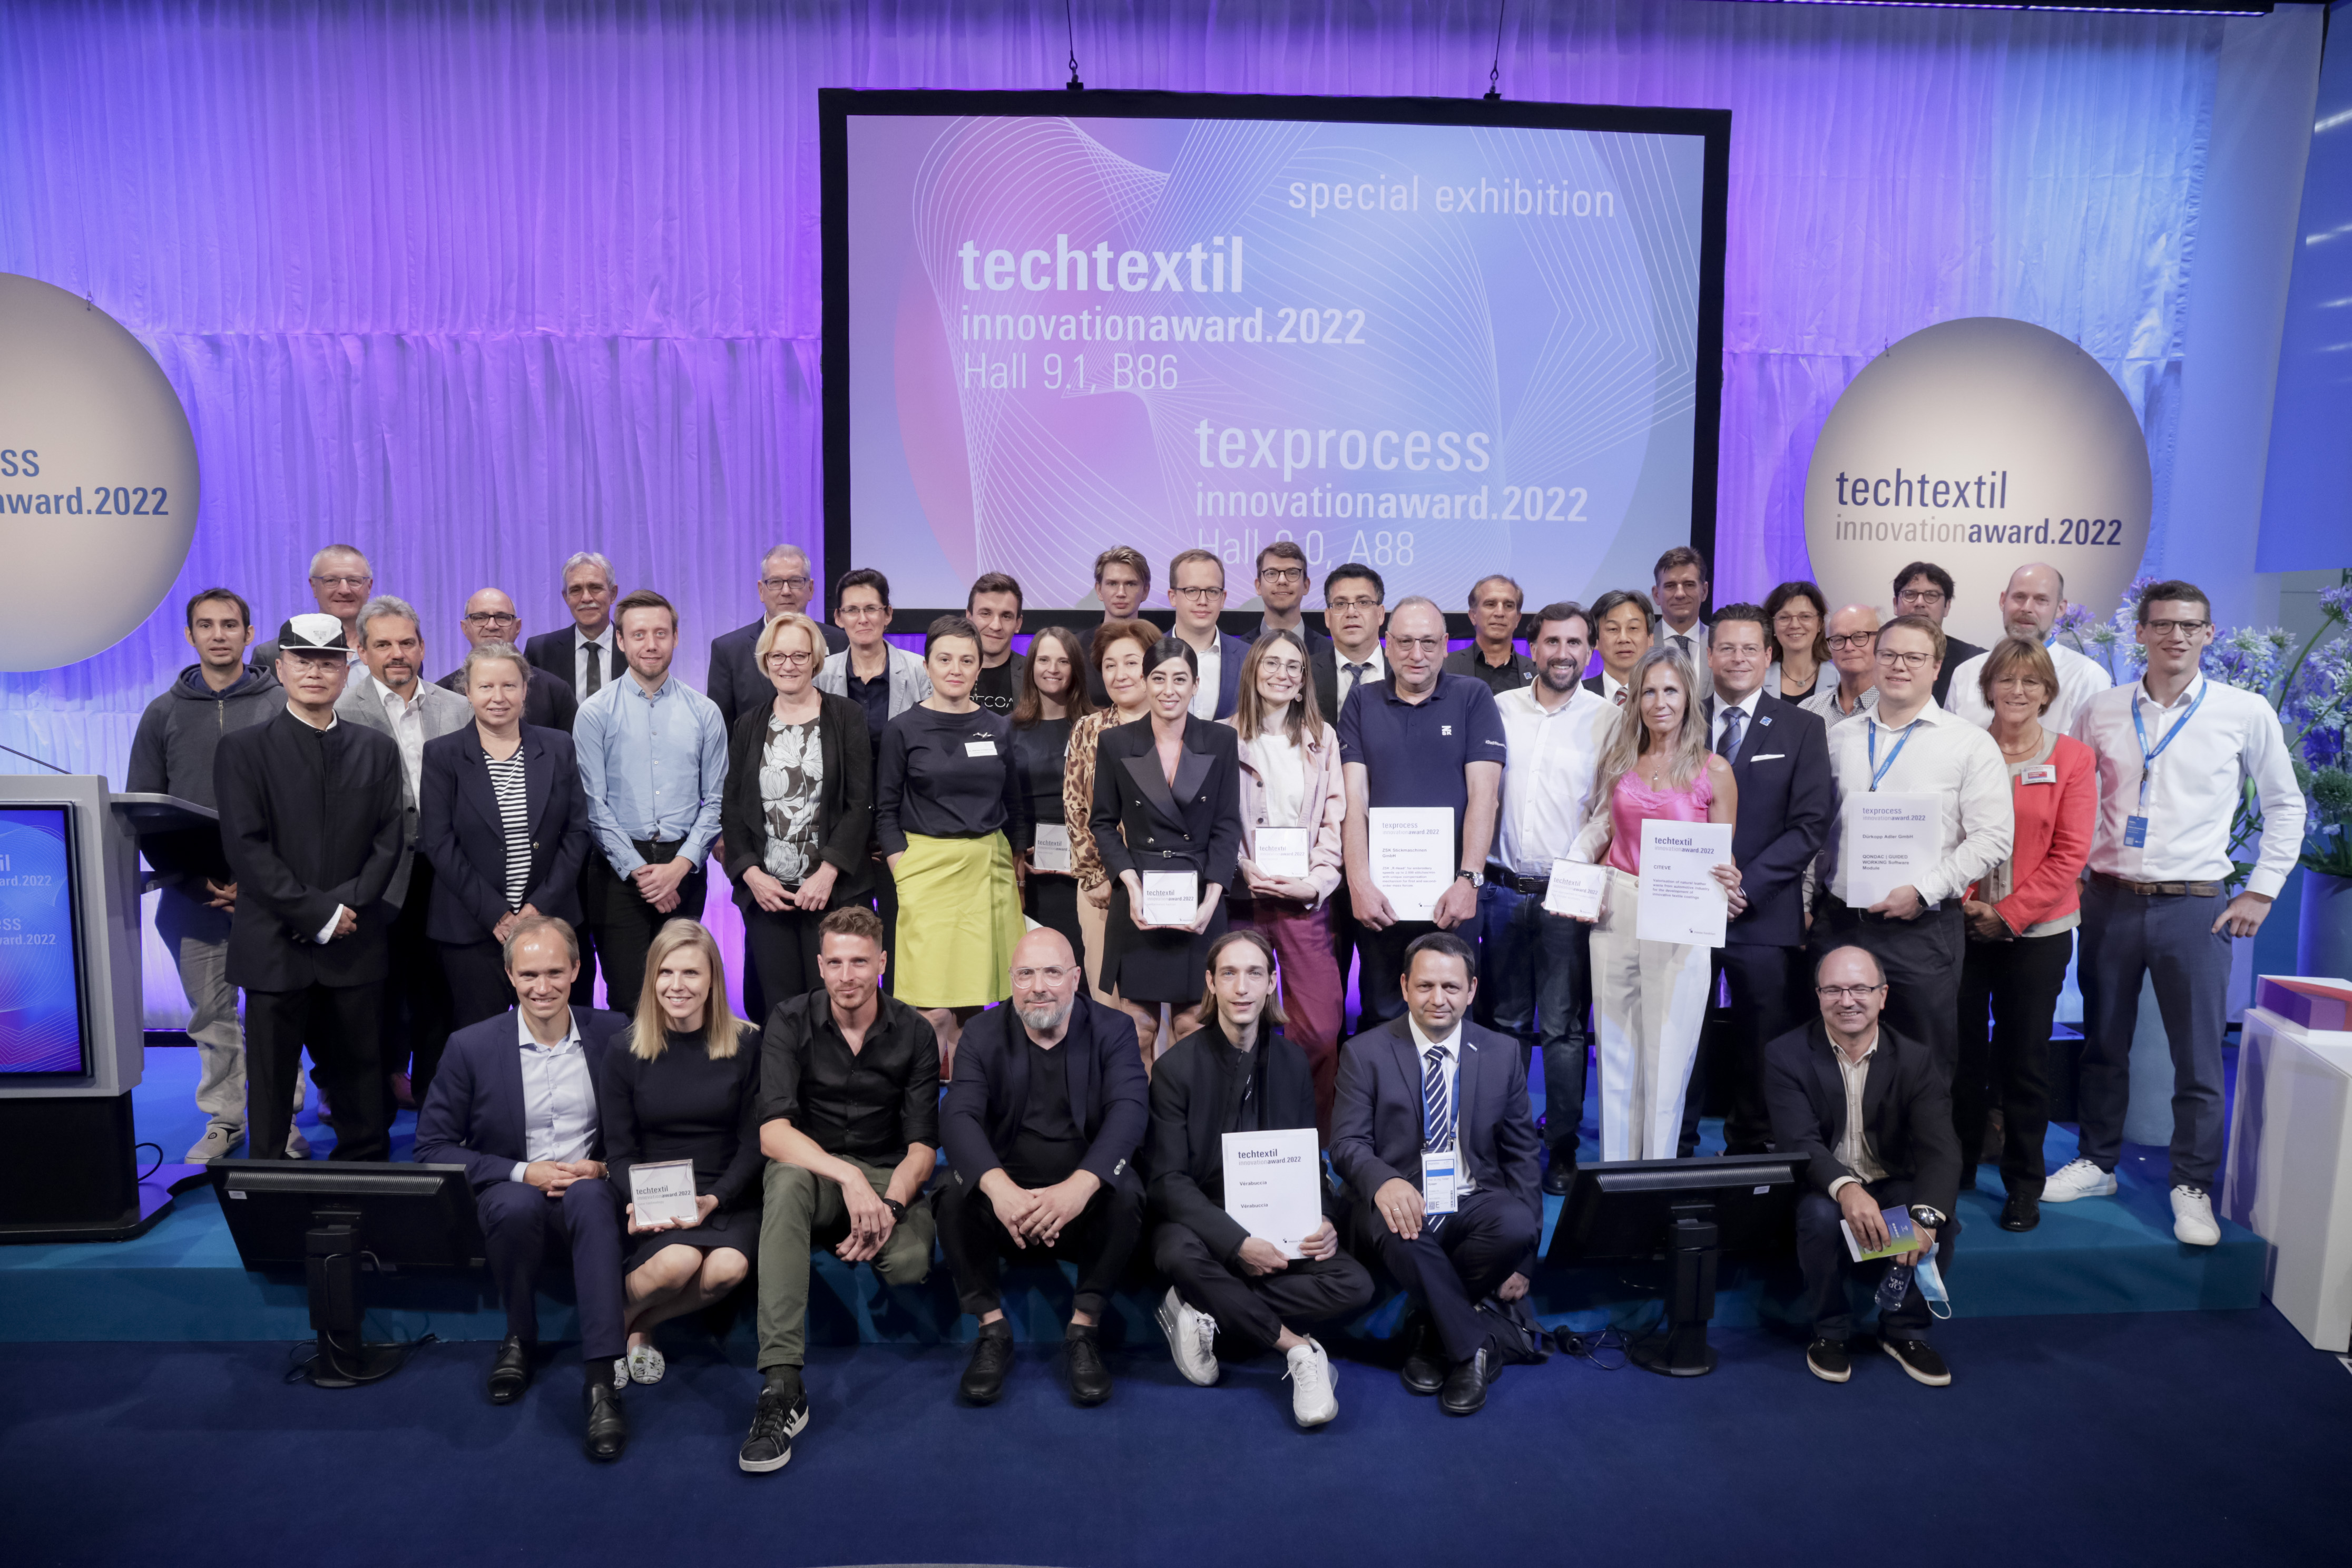 Techtextil + Texprocess Innovation Award 2022 / Award winners